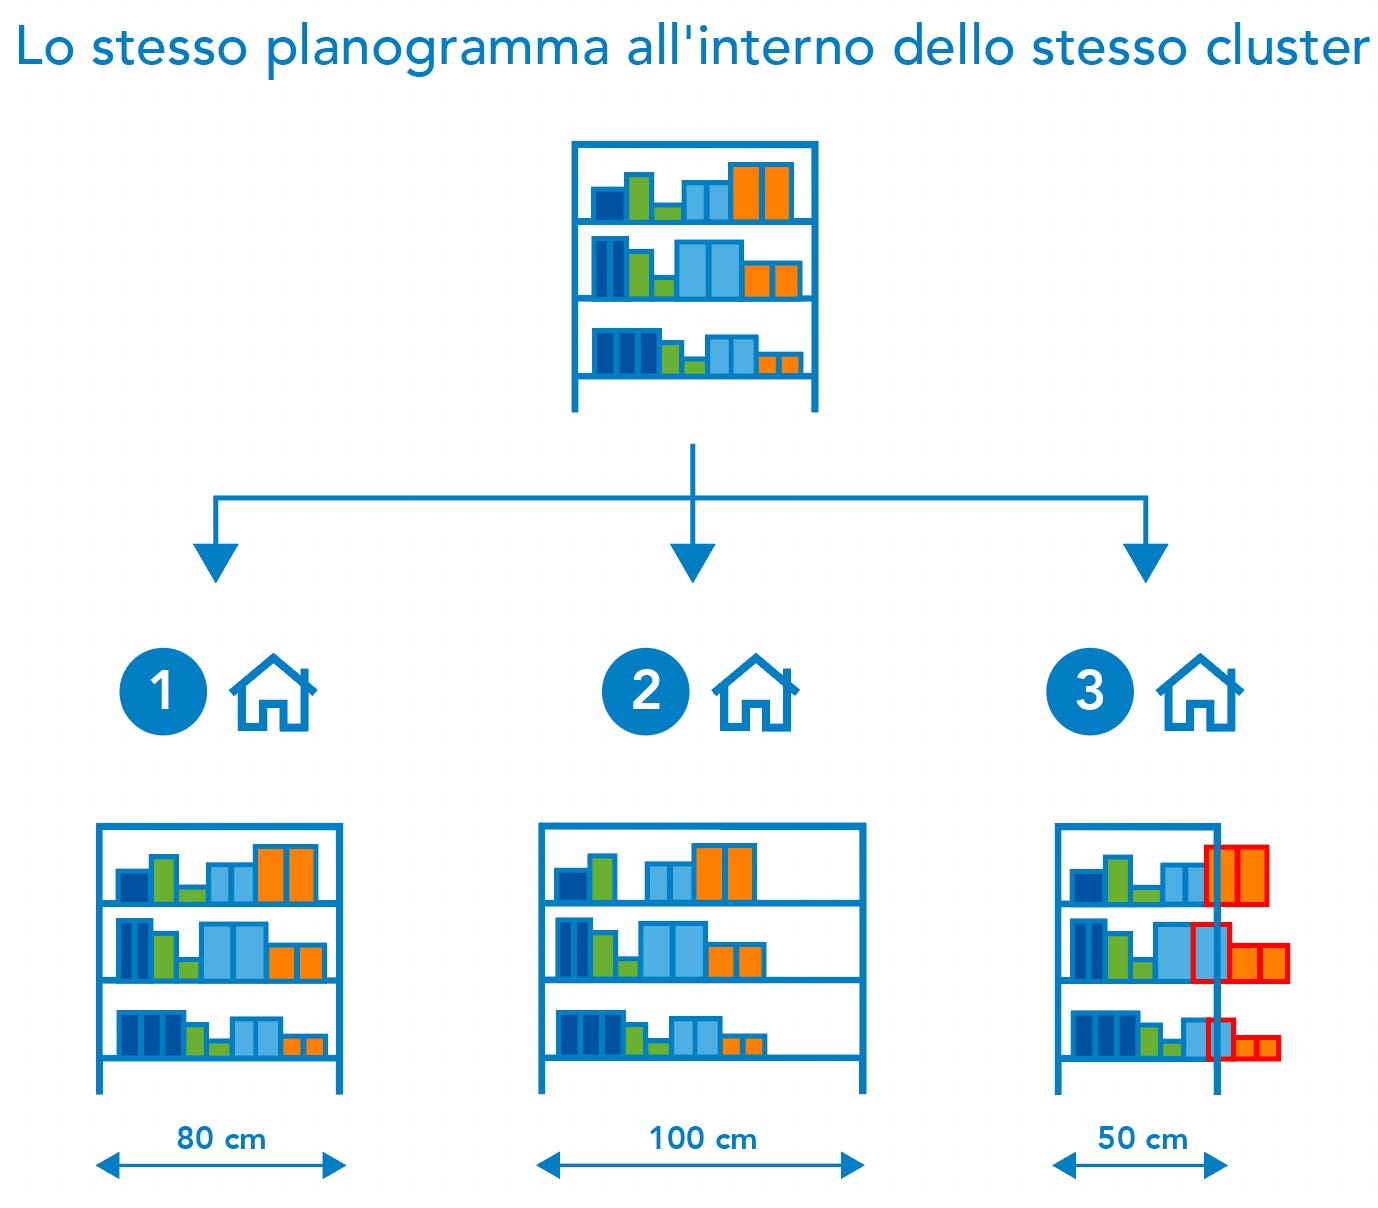 Planogrammi specifici per cluster